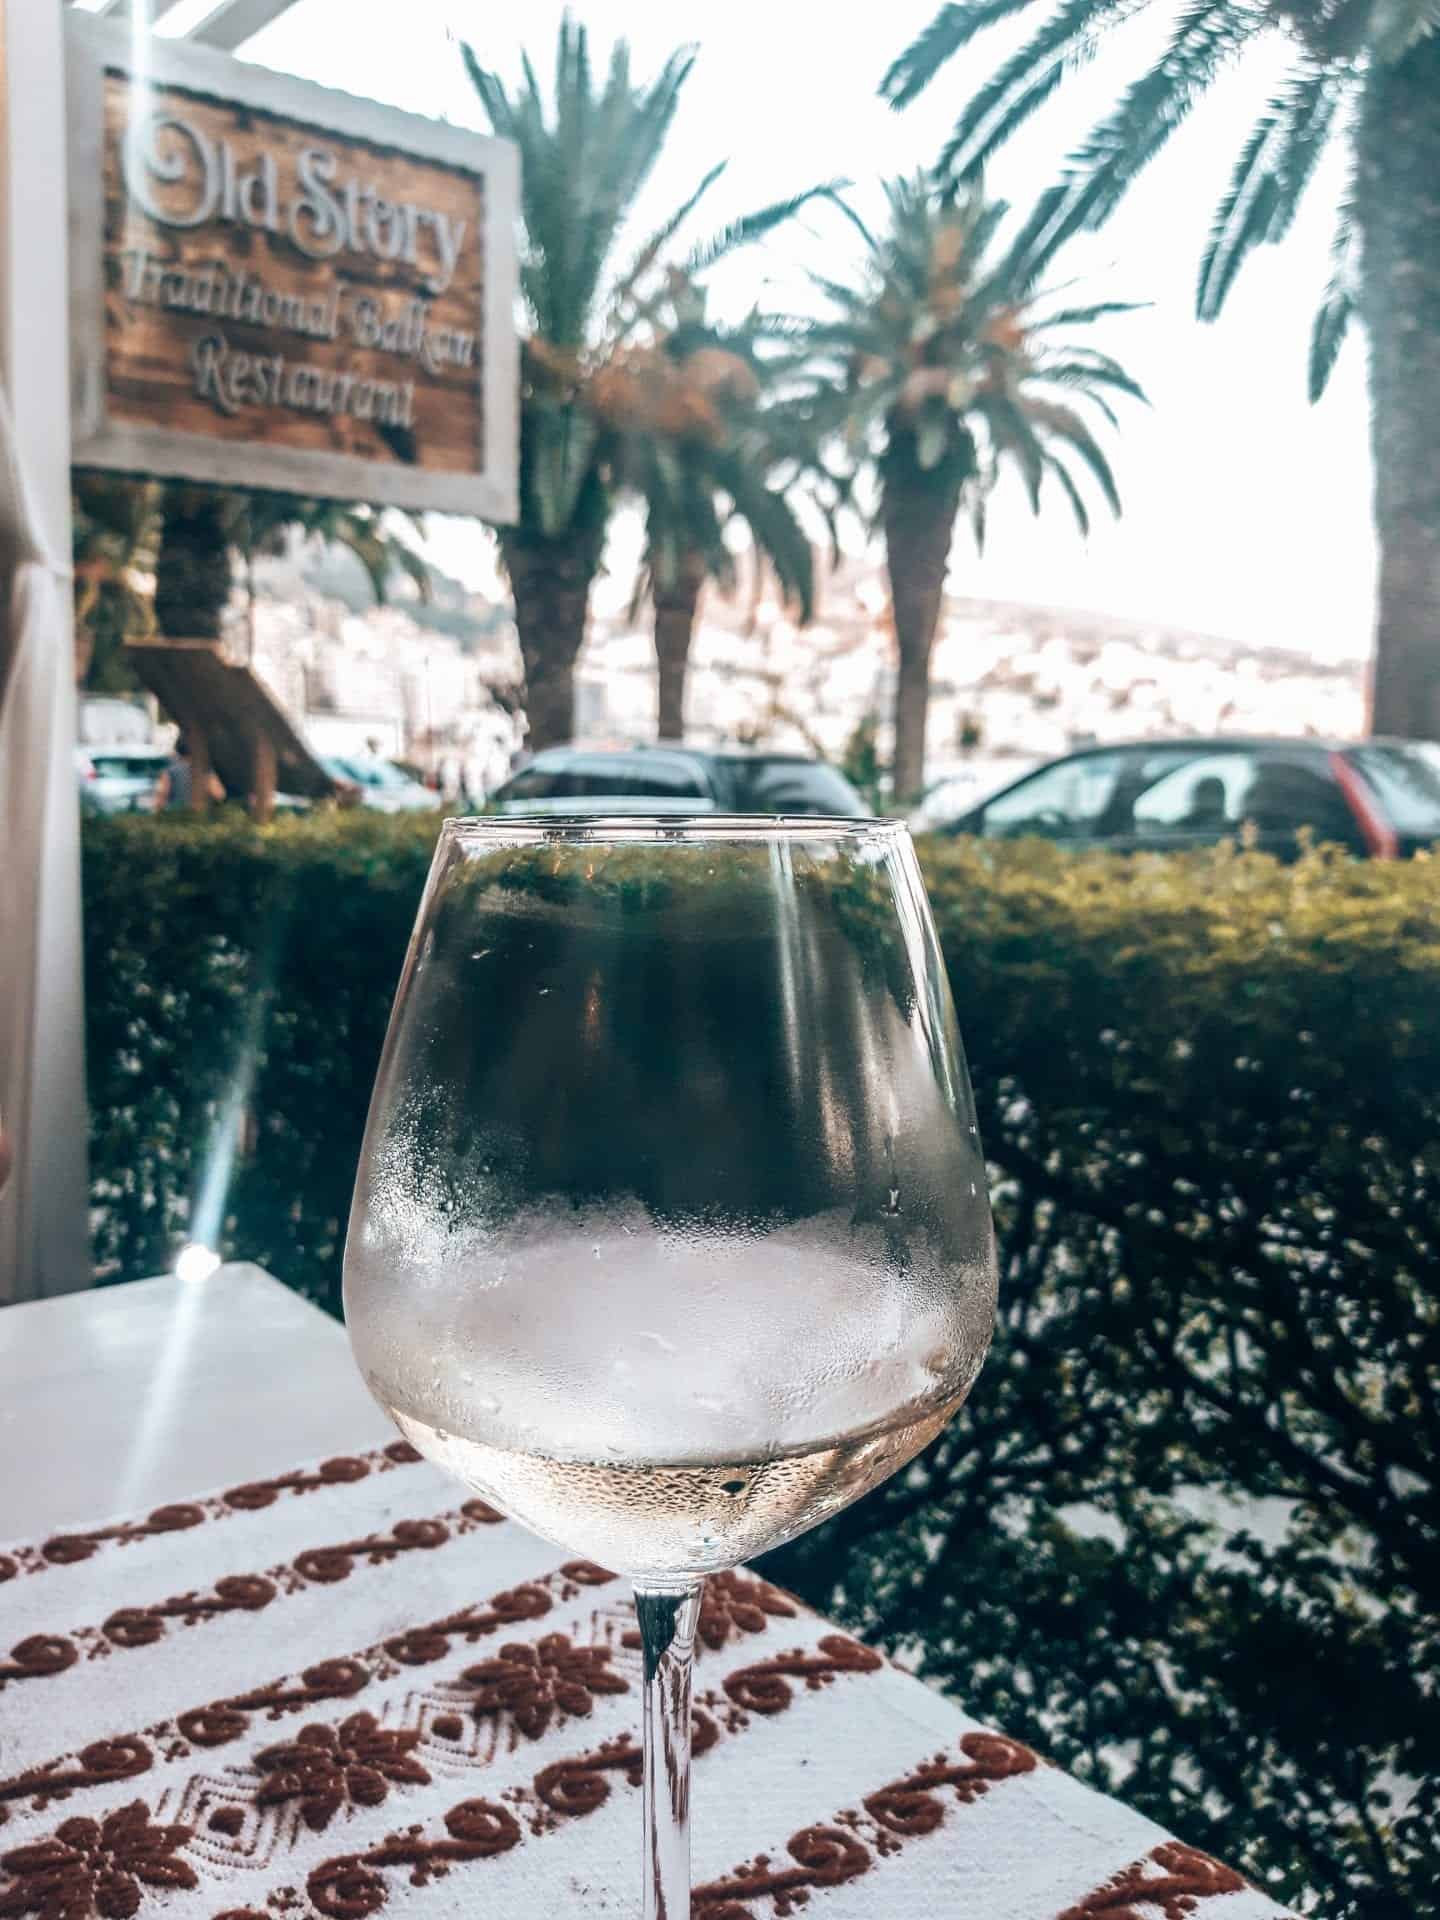 Recetas de postres albaneses para disfrutar, primer plano de una copa fría de vino blanco albanés